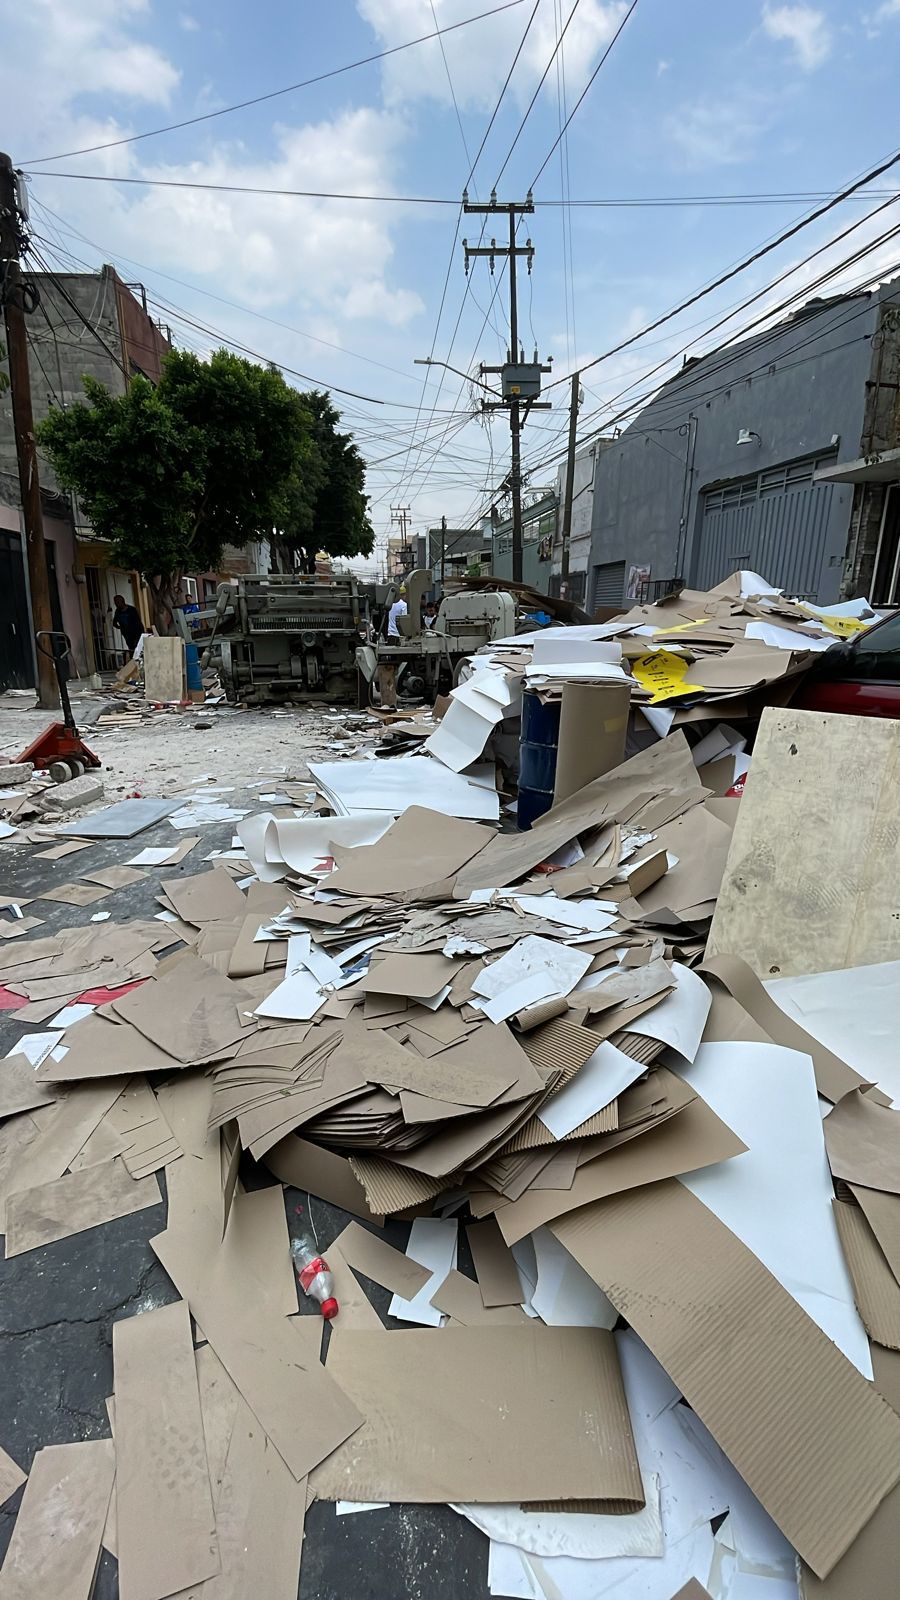 Por un desalojo en una recicladora se desató una riña en Iztacalco. Foto: Ramón Ramírez